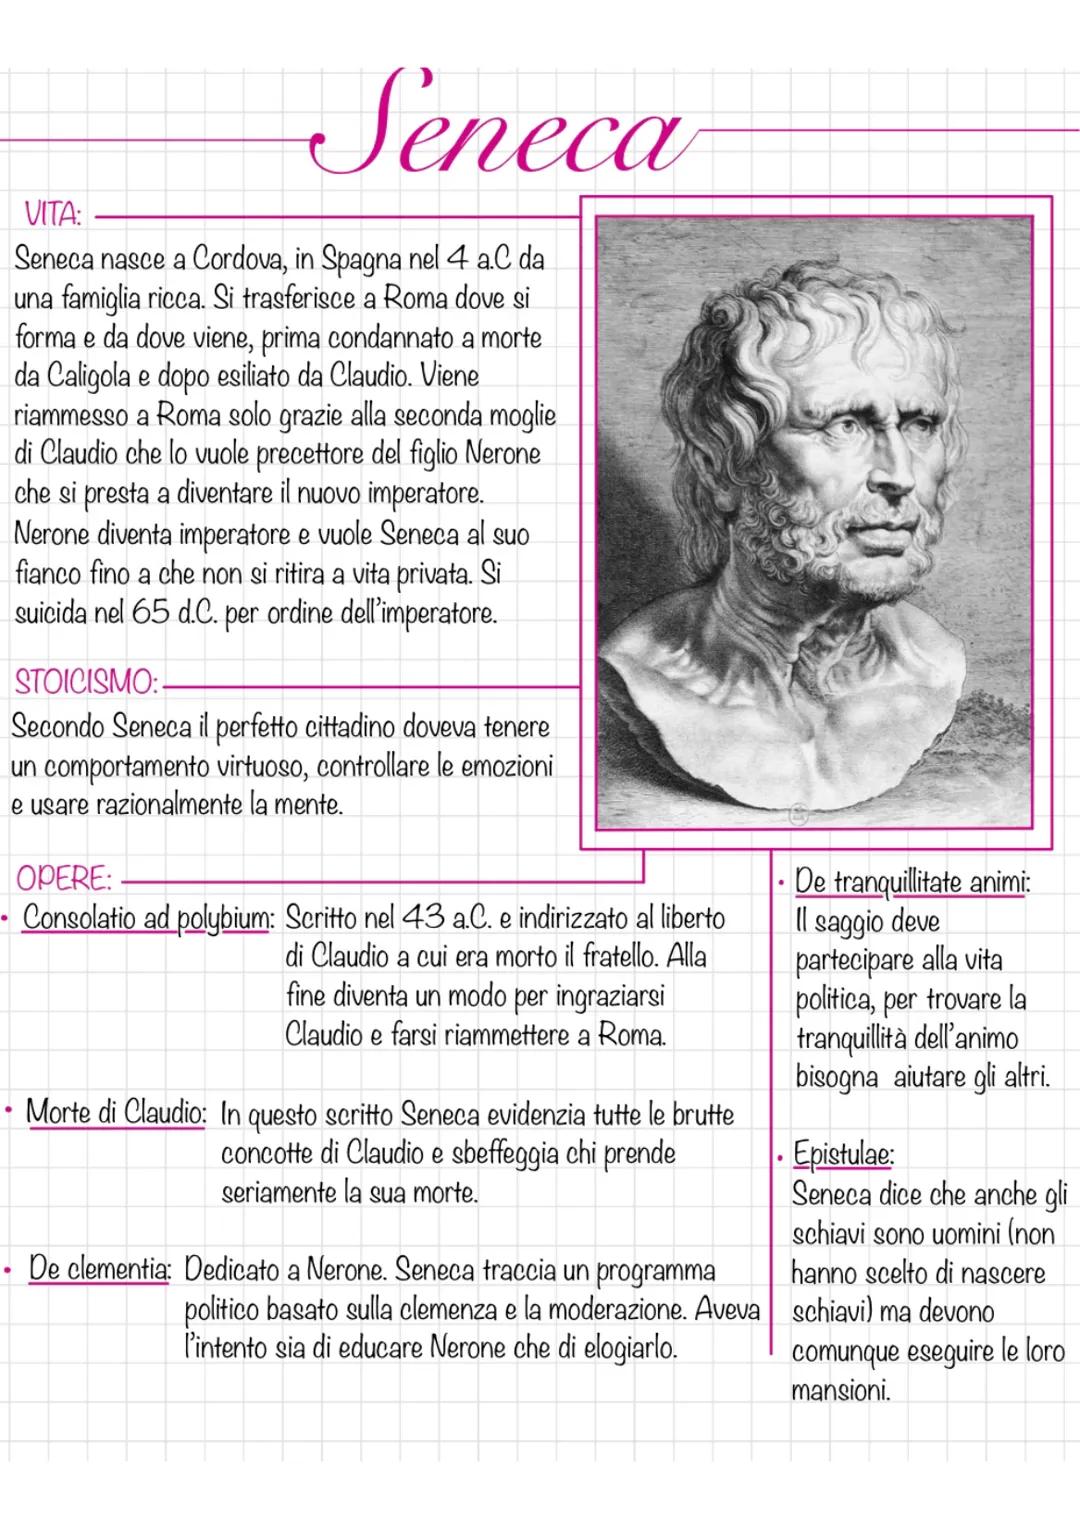 Seneca
VITA:
Seneca nasce a Cordova, in Spagna nel 4 a.C da
una famiglia ricca. Si trasferisce a Roma dove si
forma e da dove viene, prima c